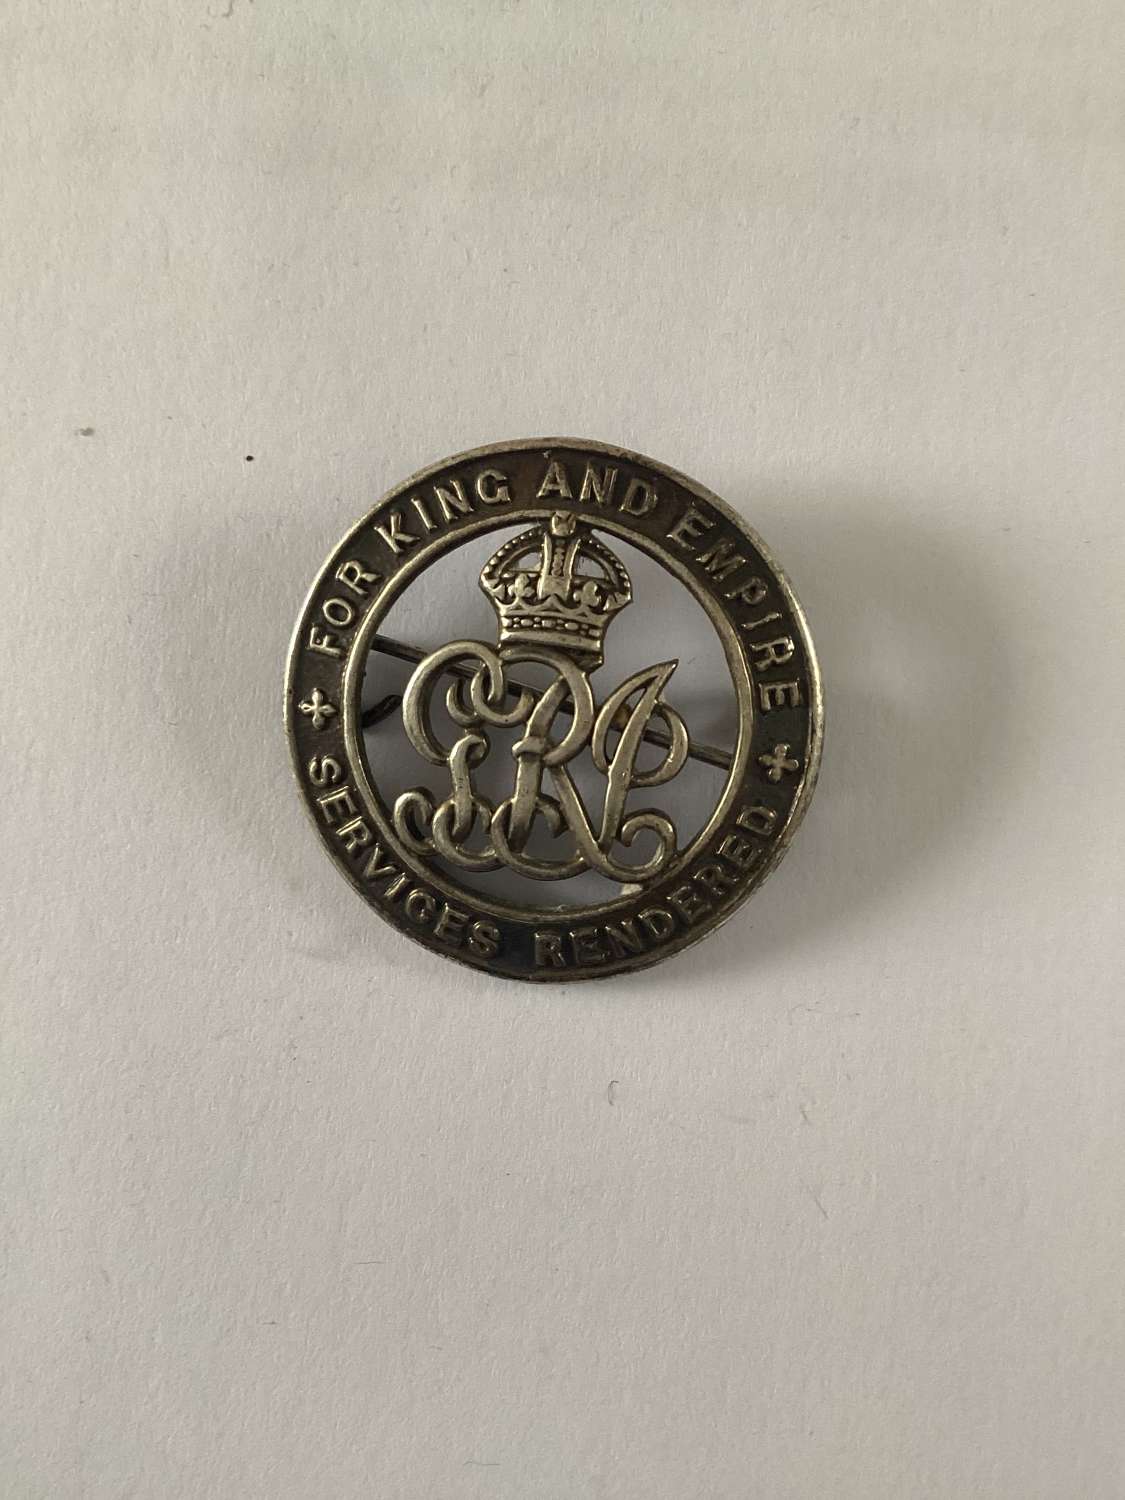 Silver War Badge Dorset Regiment